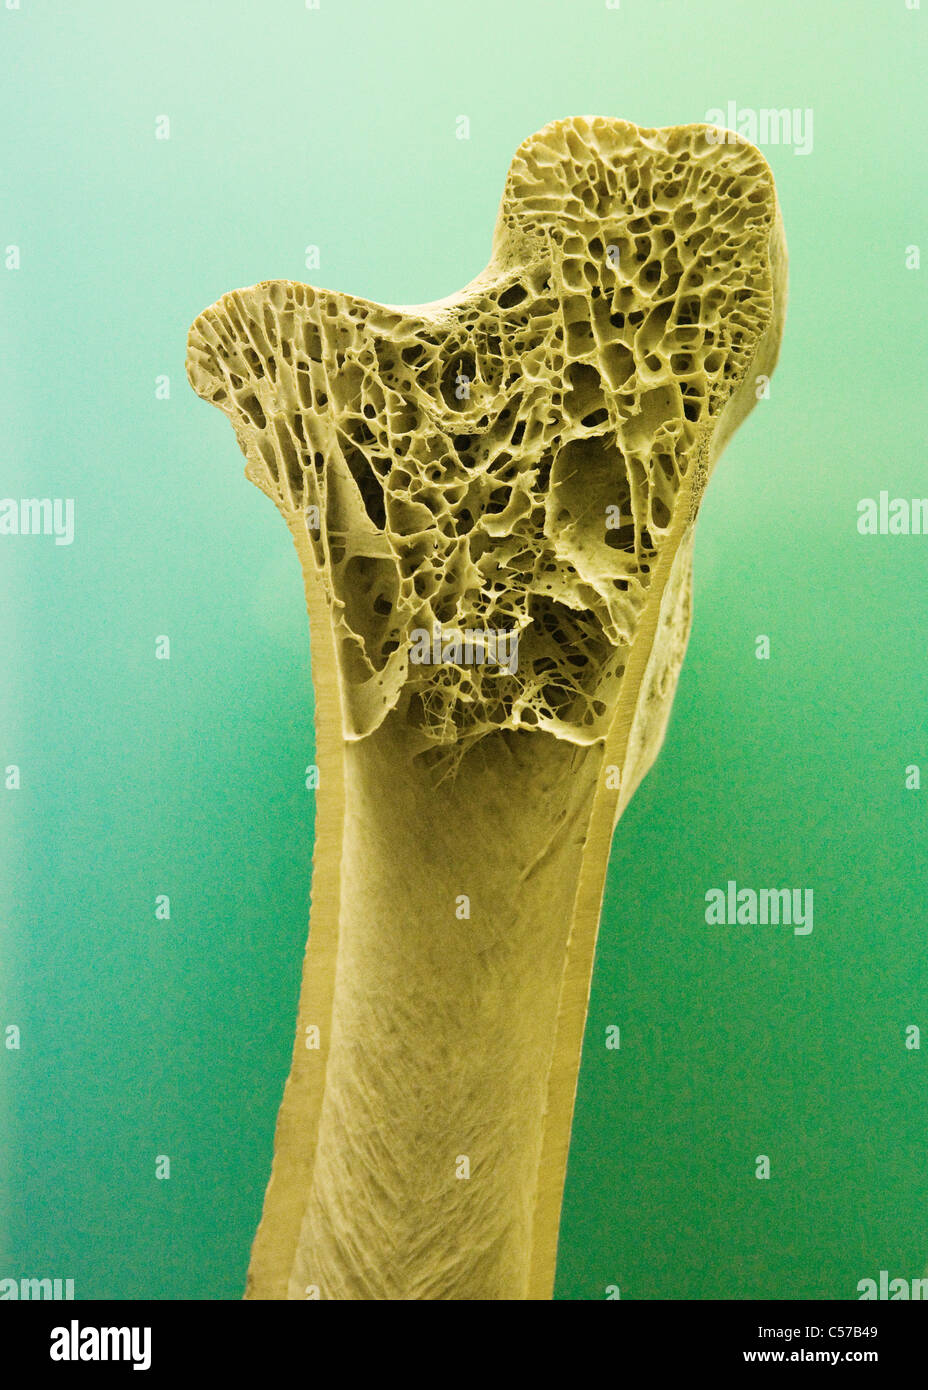 Querschnitt des menschlichen Röhrenknochen zeigt Trabekel Knochengewebe Stockfoto